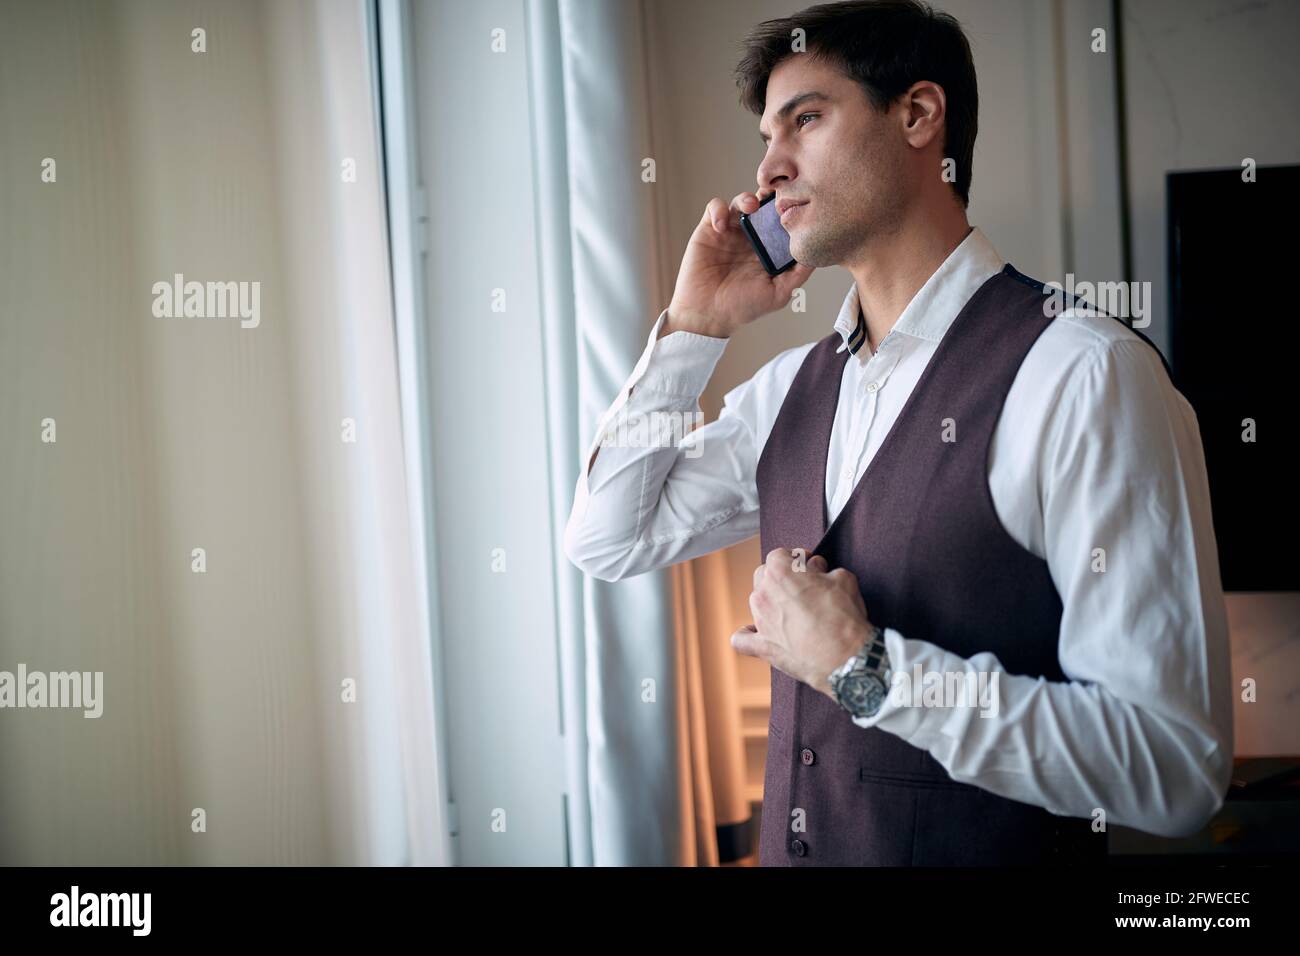 un jeune homme de race blanche, attentif, parle sur un téléphone portable près de la fenêtre et attache des boutons sur sa veste avec une autre main Banque D'Images